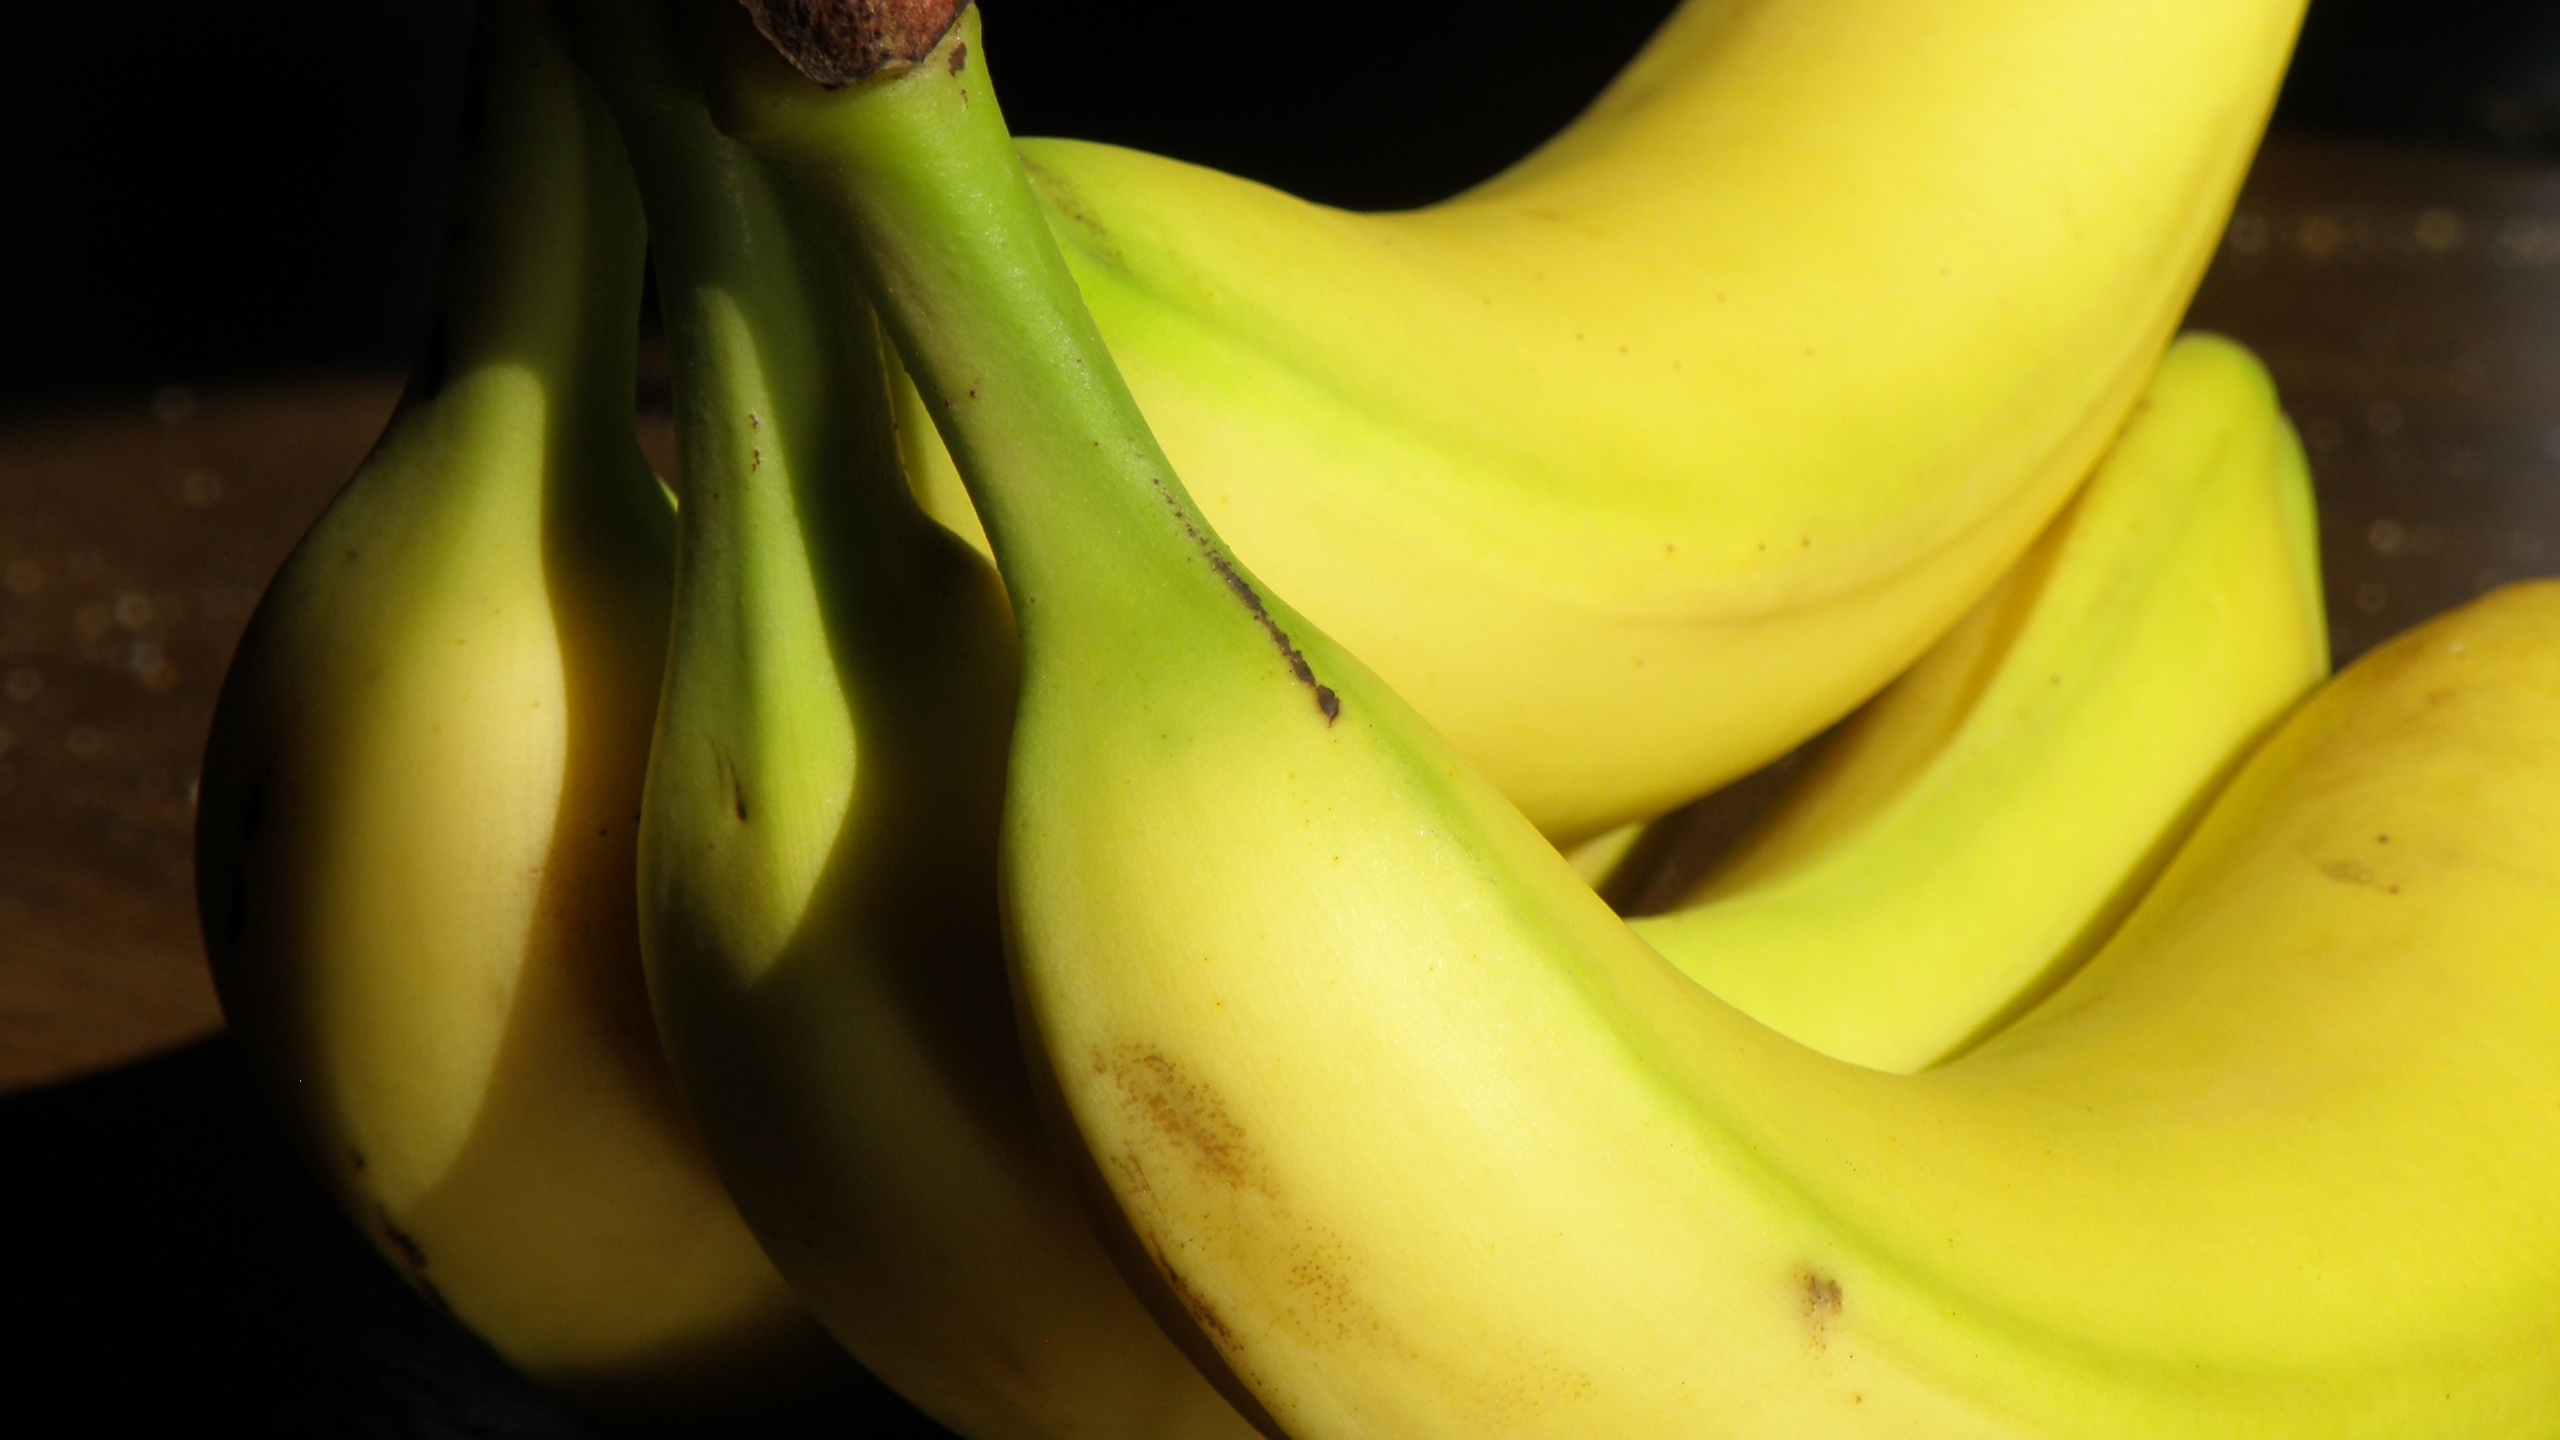 СМИ: бананы могу признать социально значимым продуктом в России